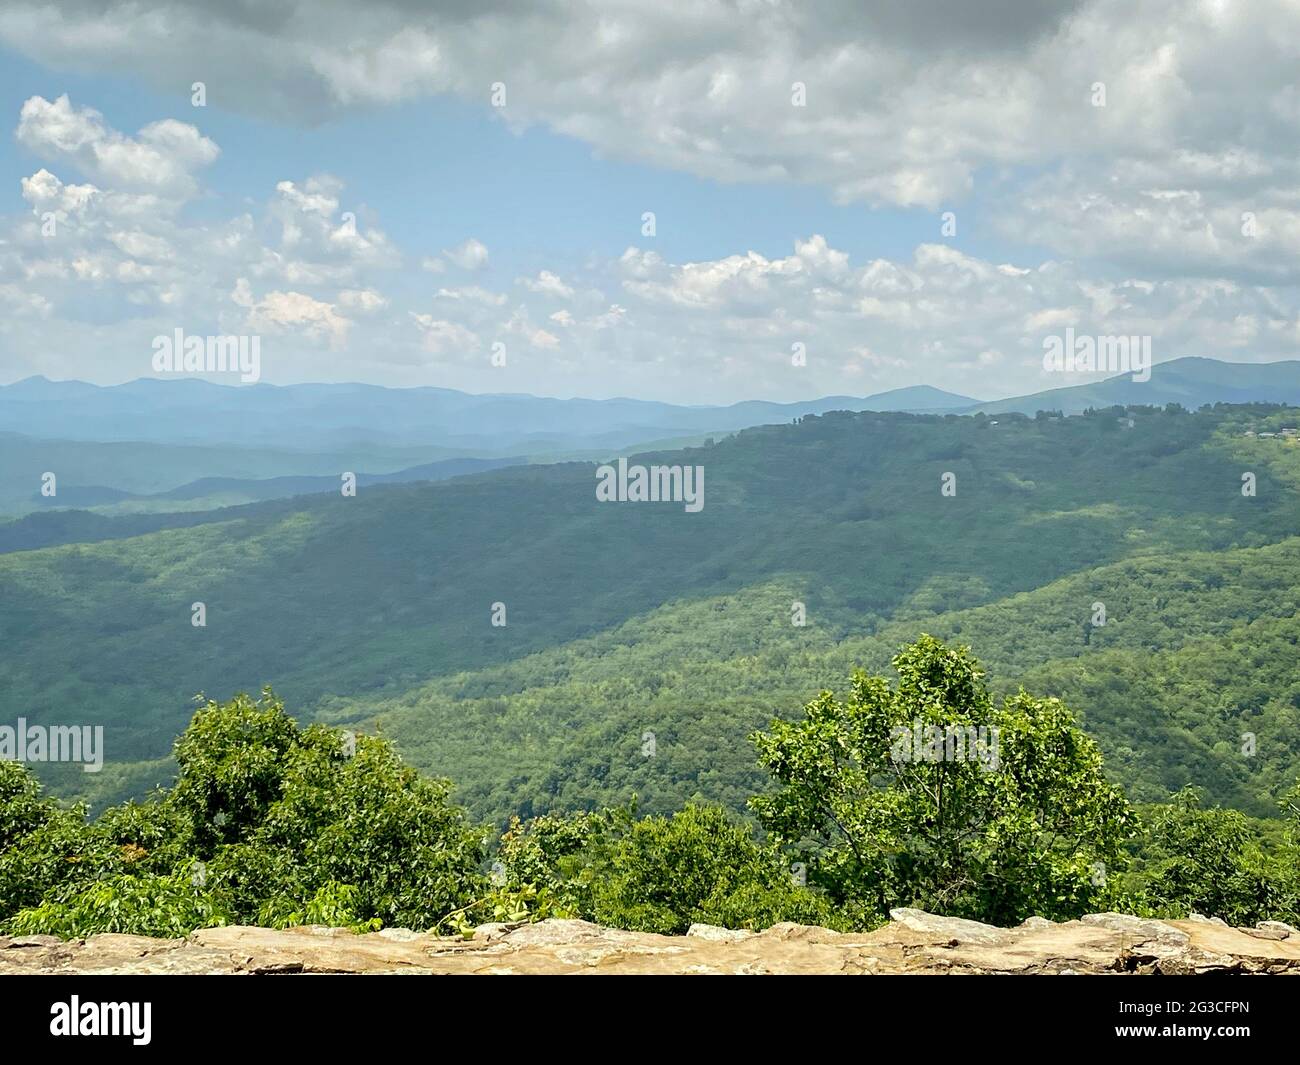 Blick auf die Berge und den Himmel von einer Steinbarriere aus, die Wolken und weite Ausblicke zeigt Stockfoto